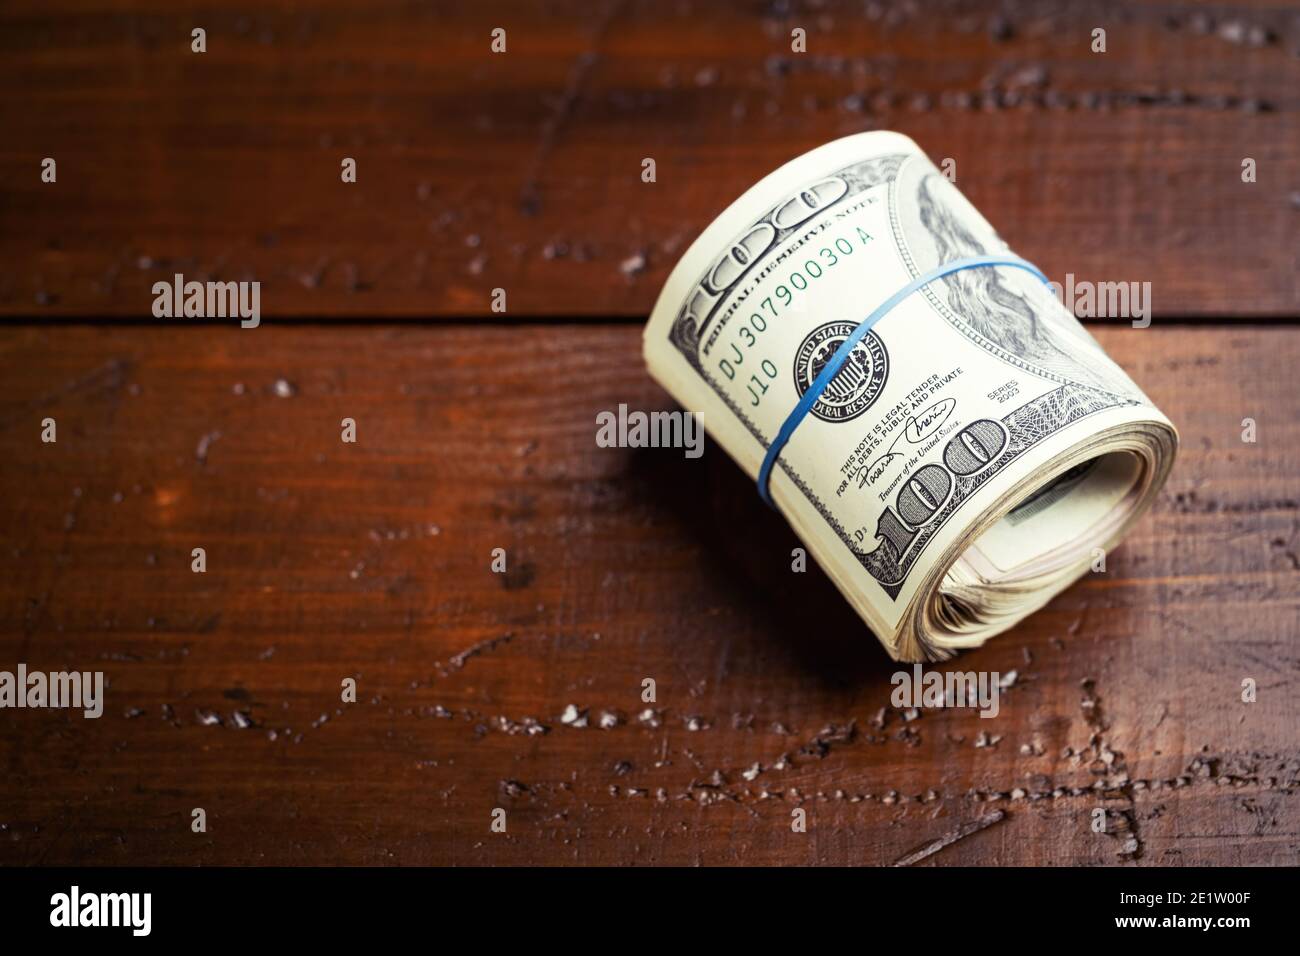 Rotolo di denaro con gomma su tavola di legno - cento banconote USA con ritratto del presidente Franklin. Contanti di cento fatture del dollaro, valuta della carta ba Foto Stock